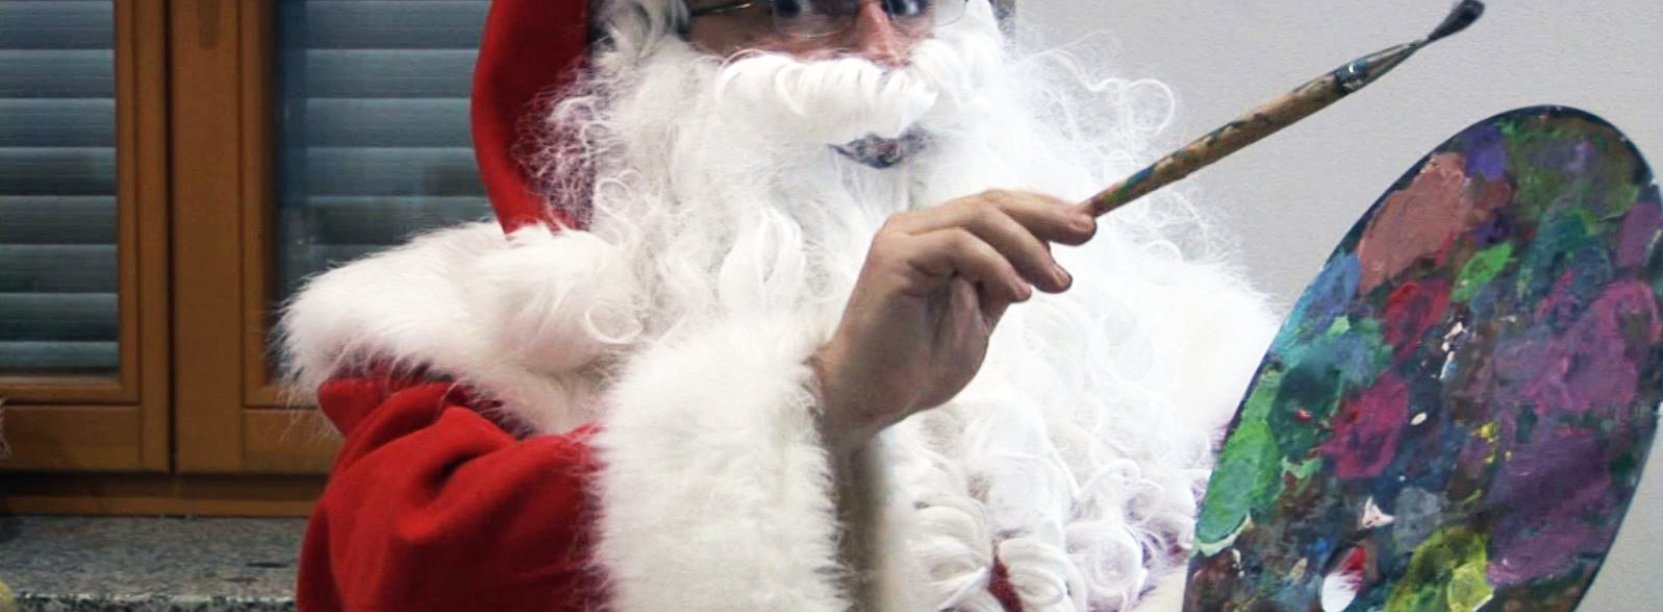 Mikołaj trzymający paletę malarską